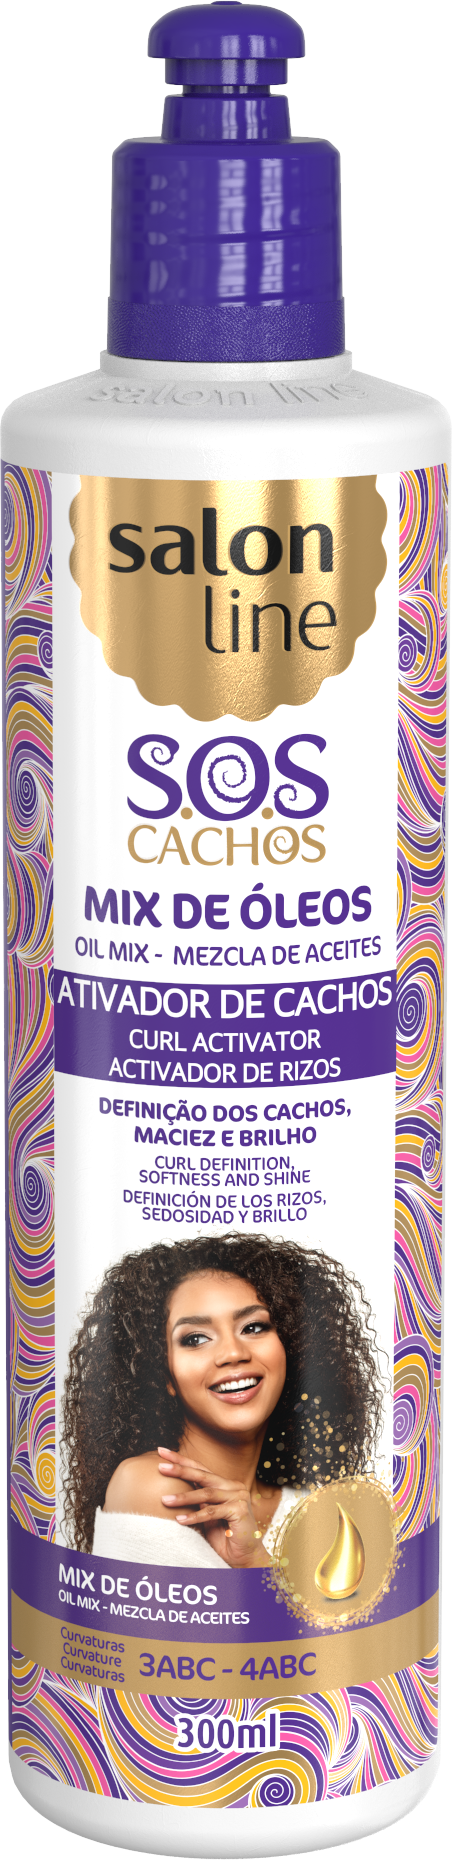 Salon Line S.O.S Cachos Oil Mix Curl Activator 500ml Salon Line